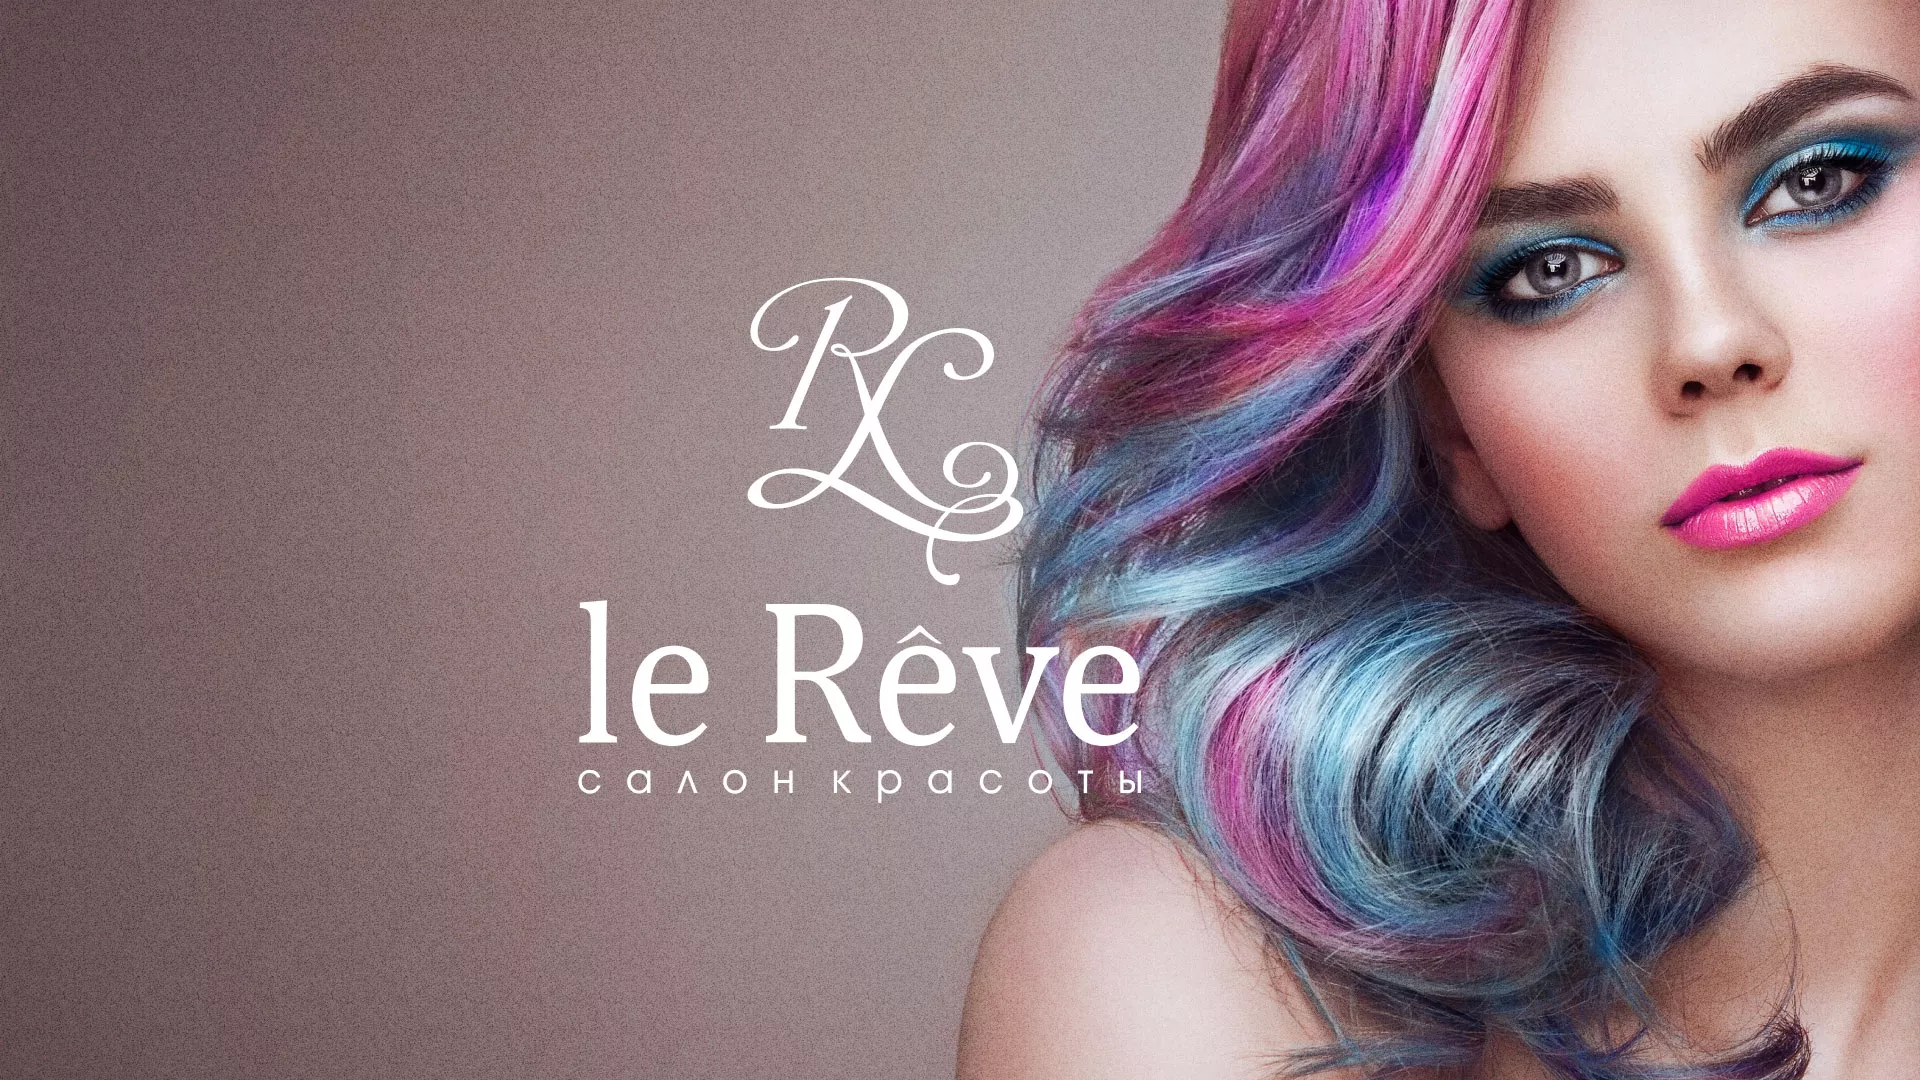 Создание сайта для салона красоты «Le Reve» в Куйбышеве